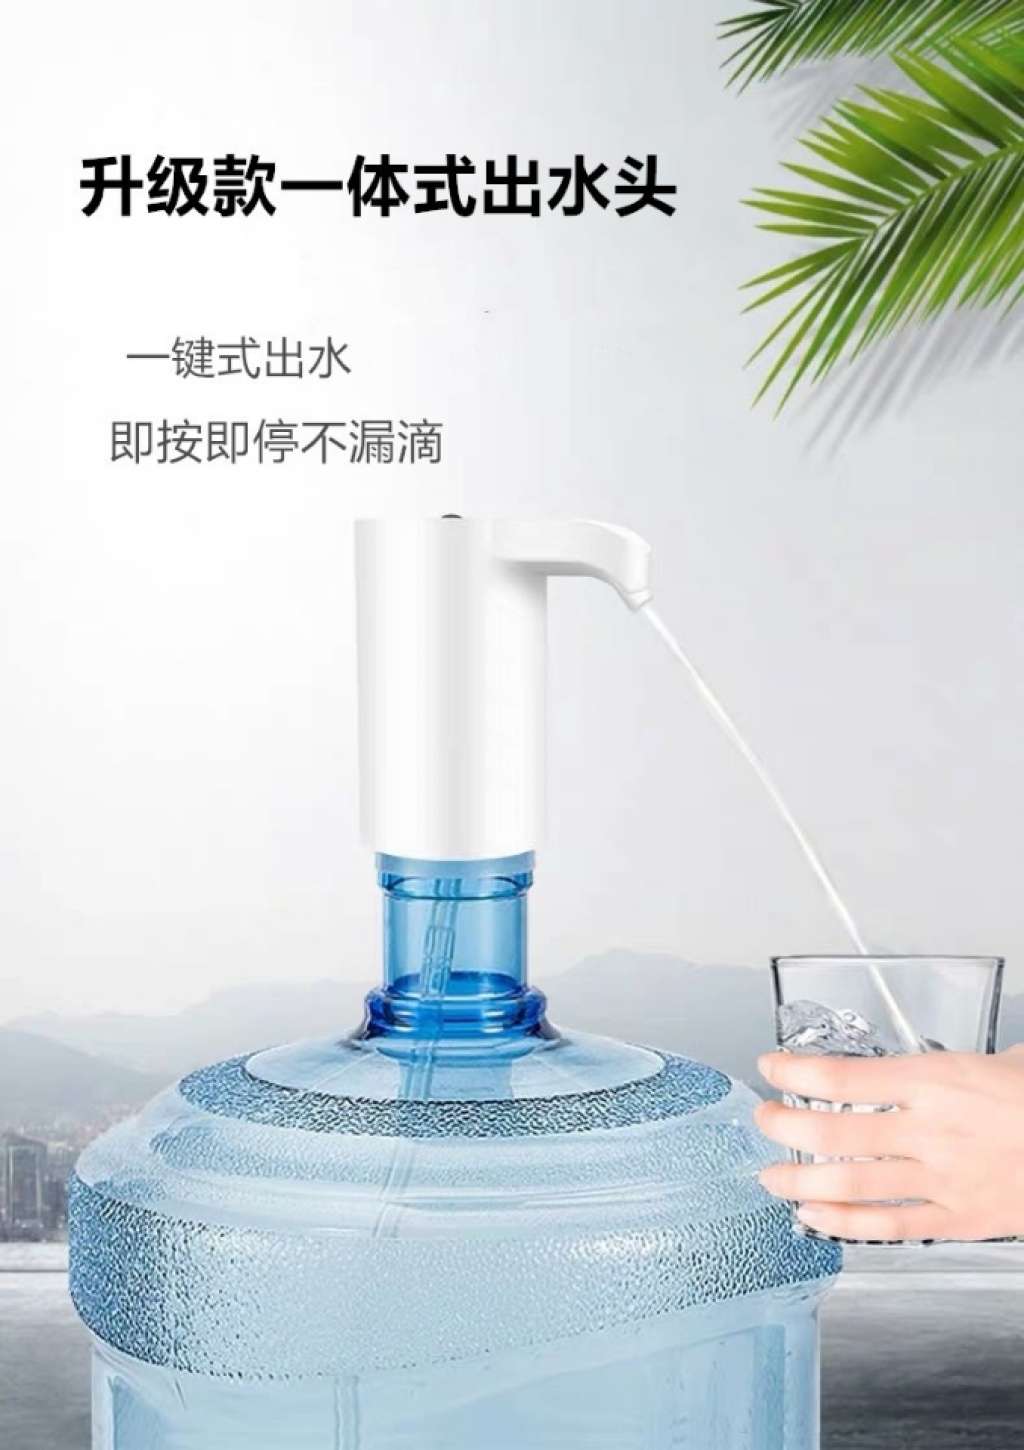 桶装水自动抽水器充电式自动抽水泵电动抽水器带蓝光灯USB抽水机详情图2